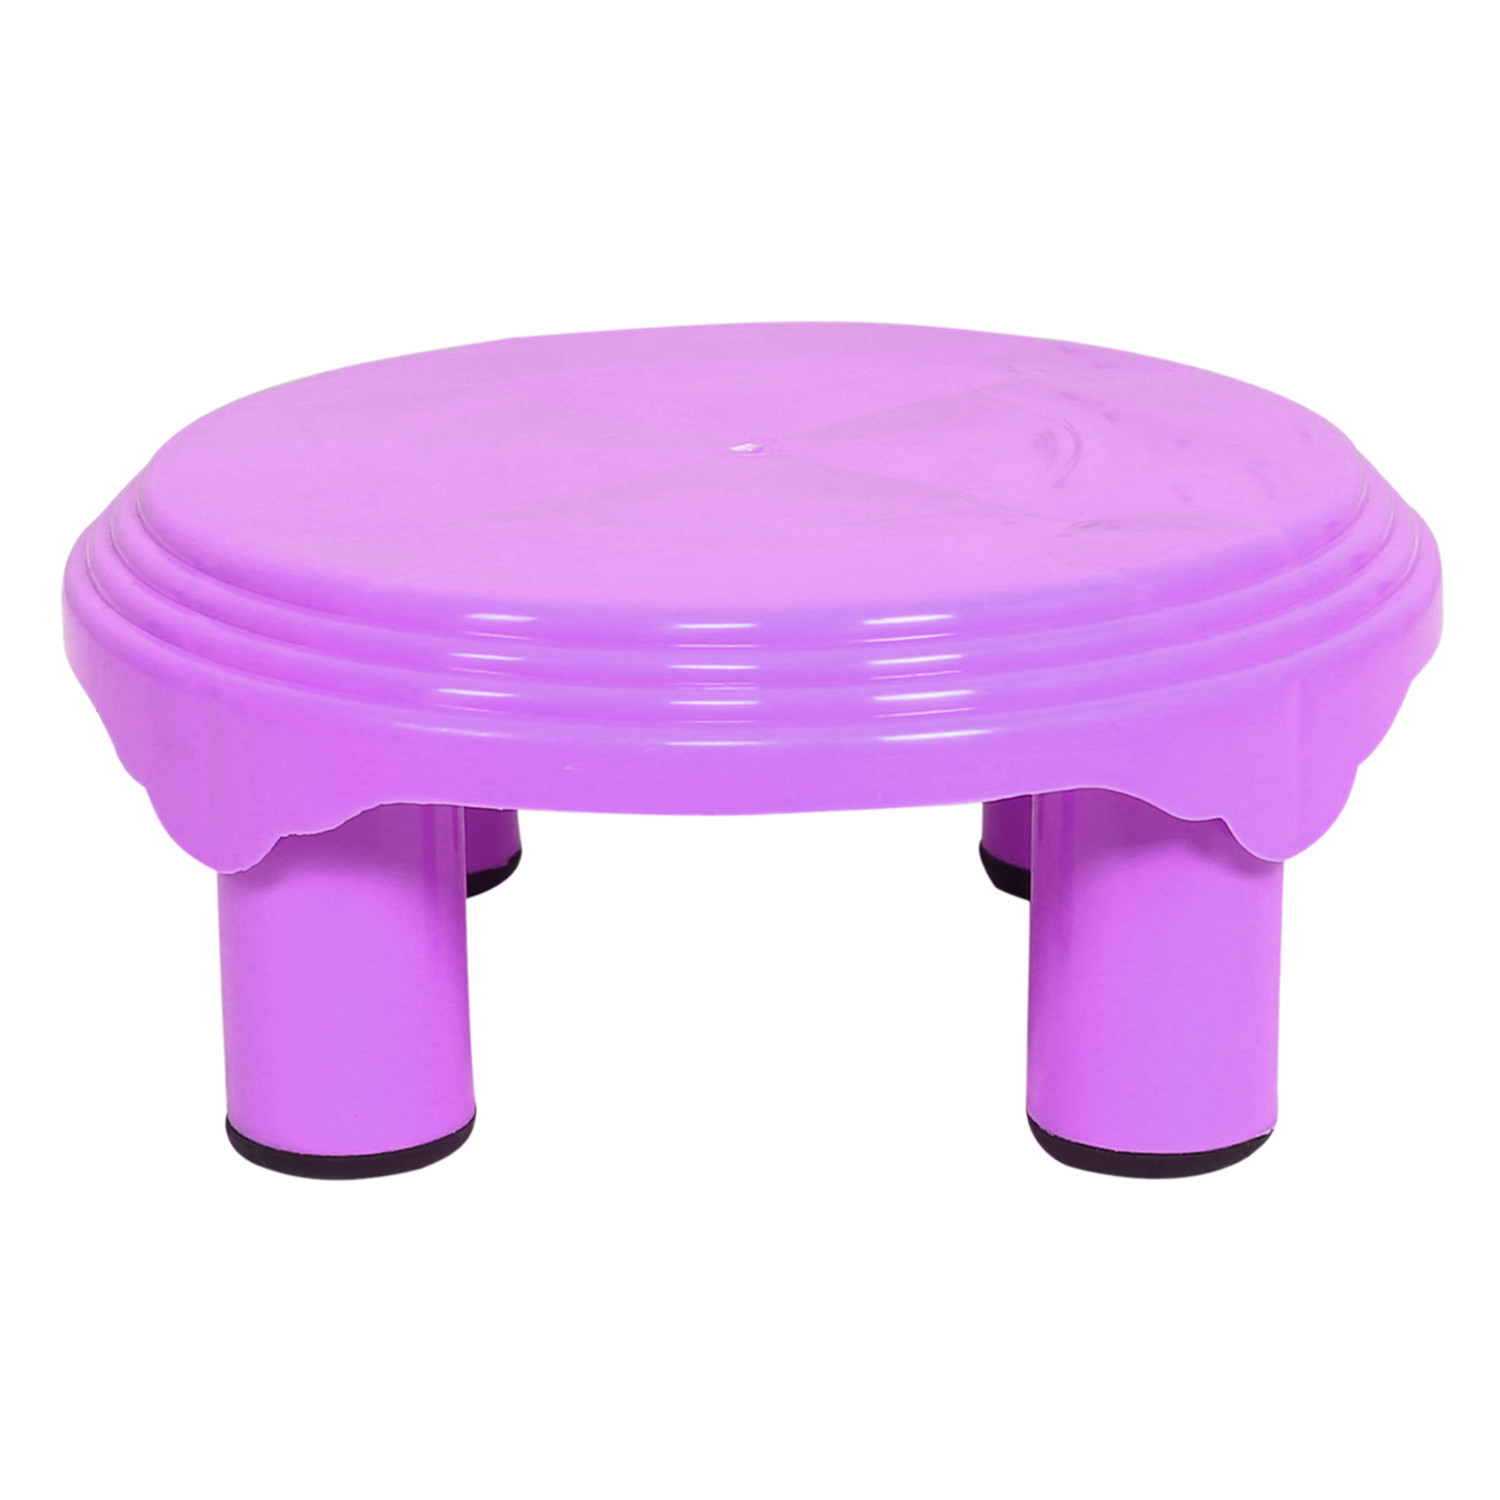 Kuber Industries Bathroom Stool|Plastic Stool|Anti-slip Bathing Stool|Stool for Senior Citizen|Patla for Bathroom|Pack of 2 (Mint Green & Pink)